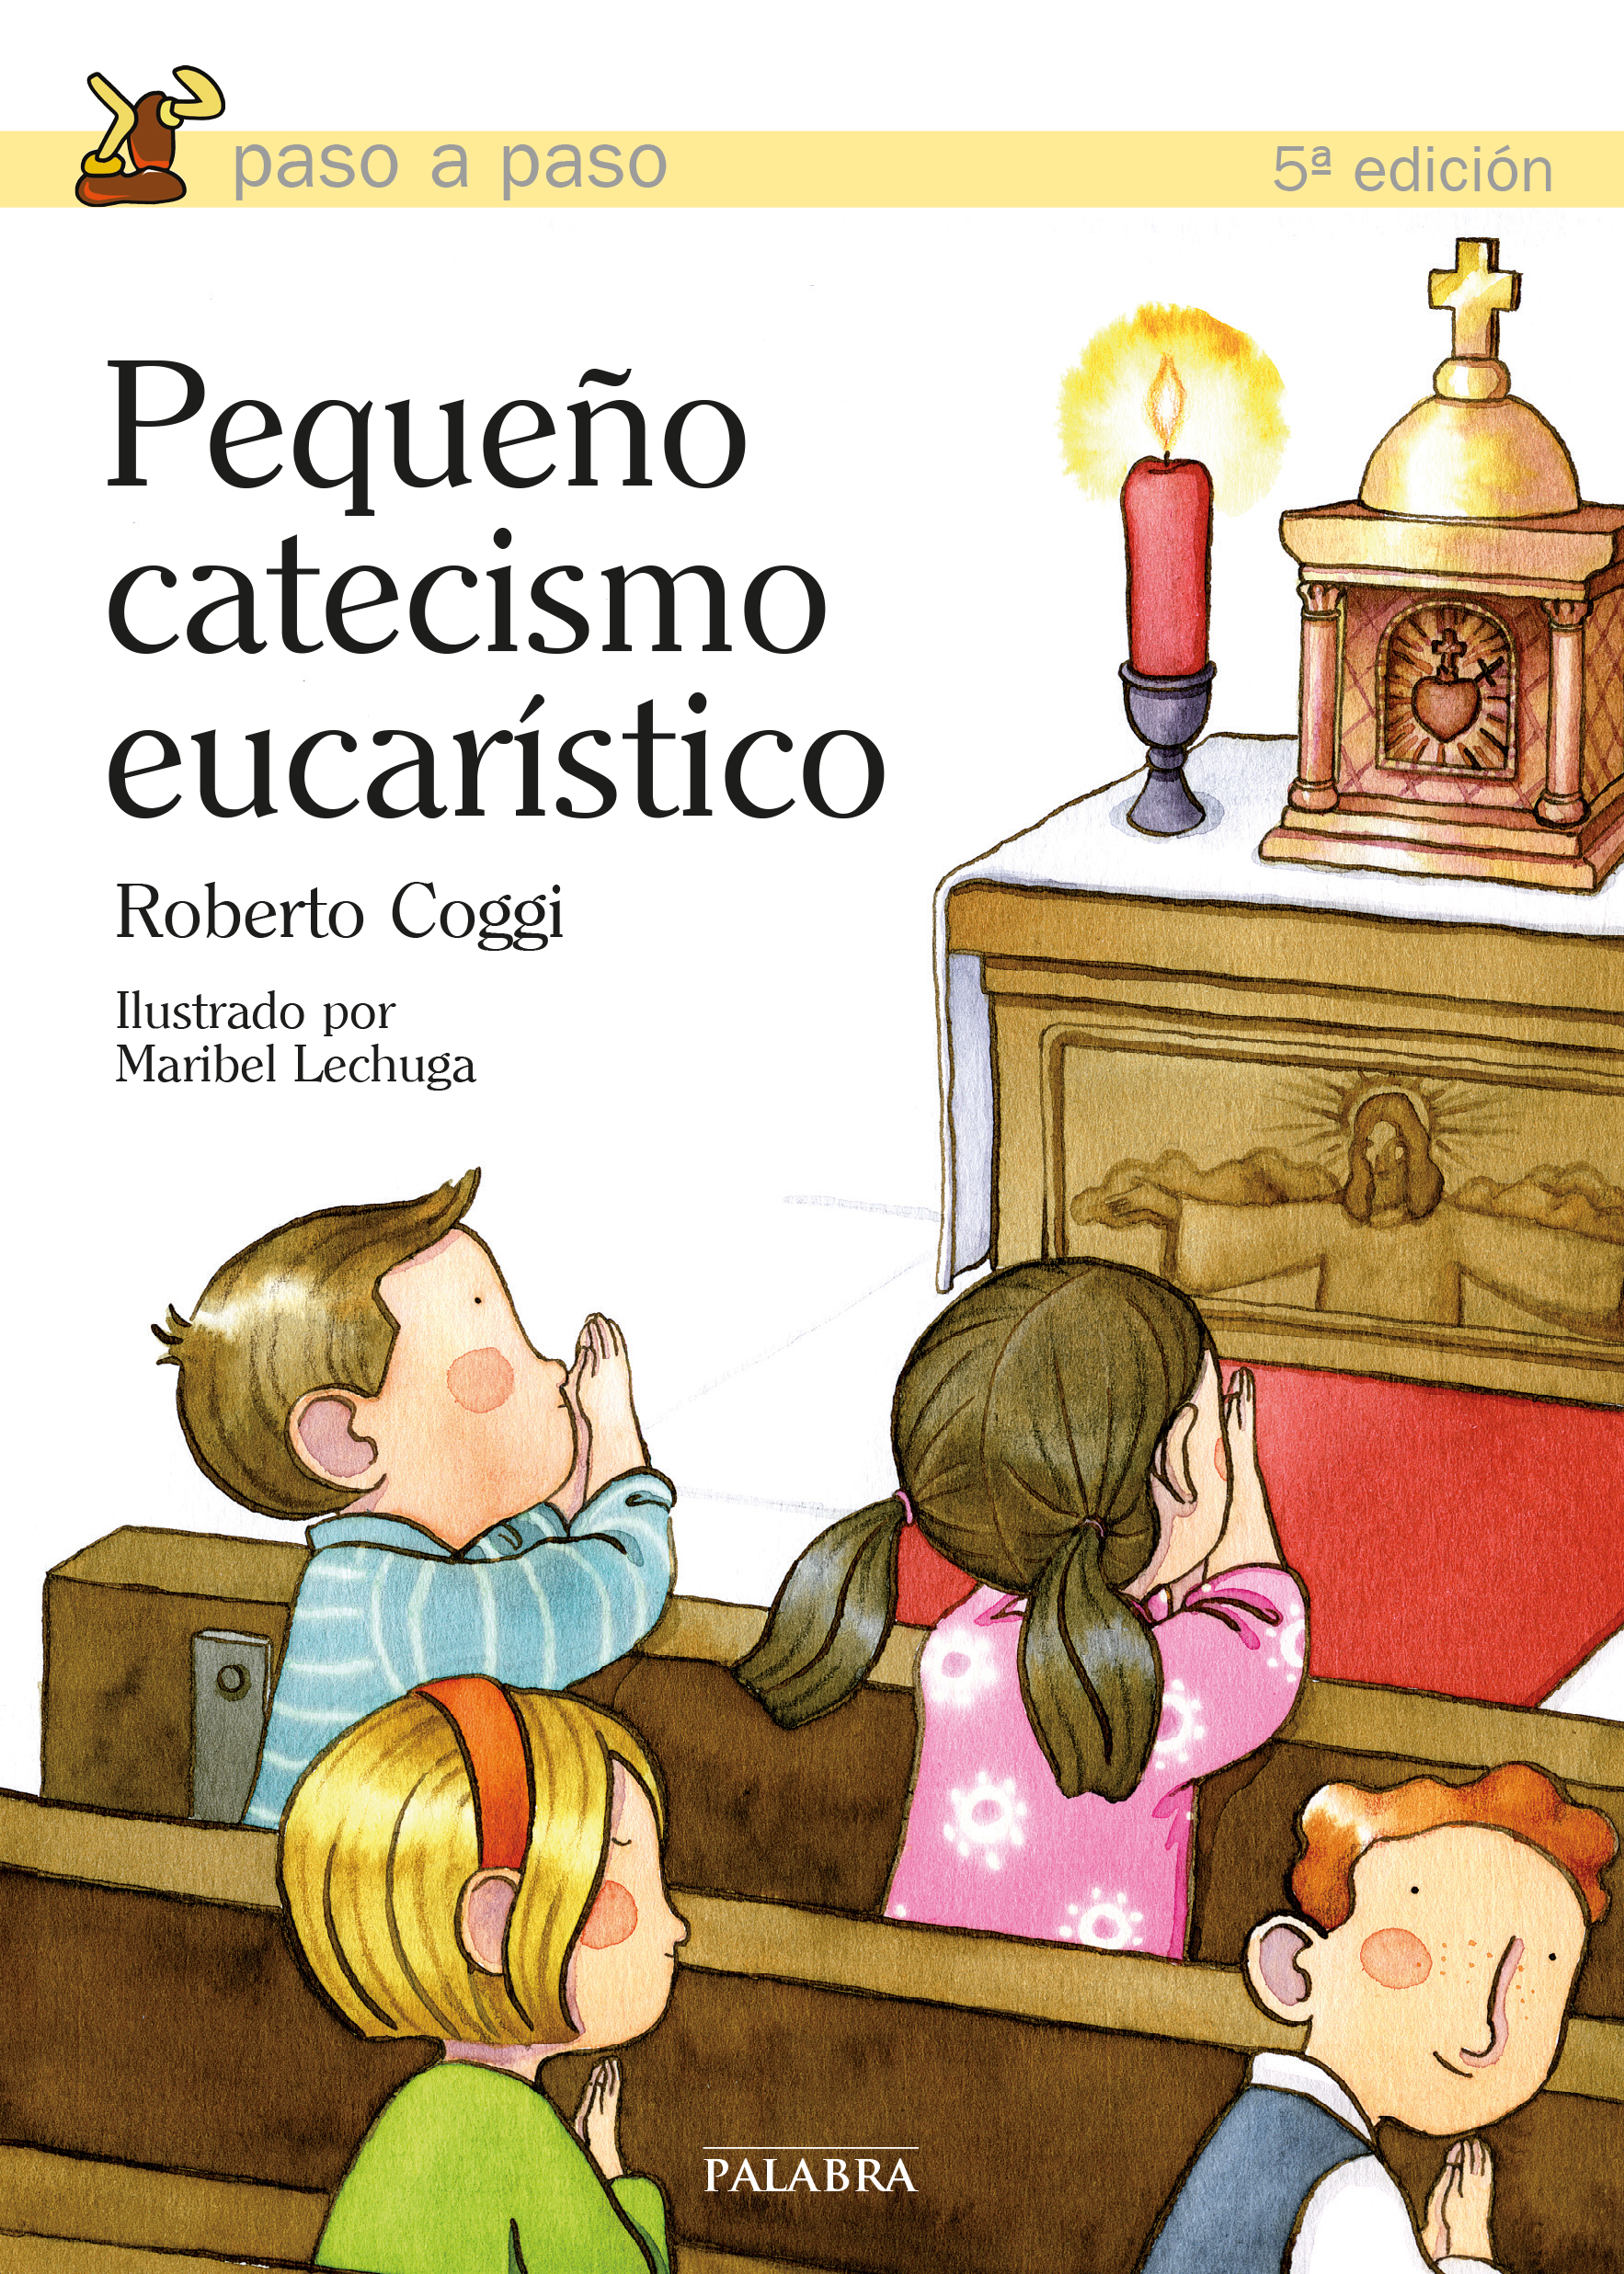 Libro: Pequeño catecismo eucarístico de Roberto Coggi